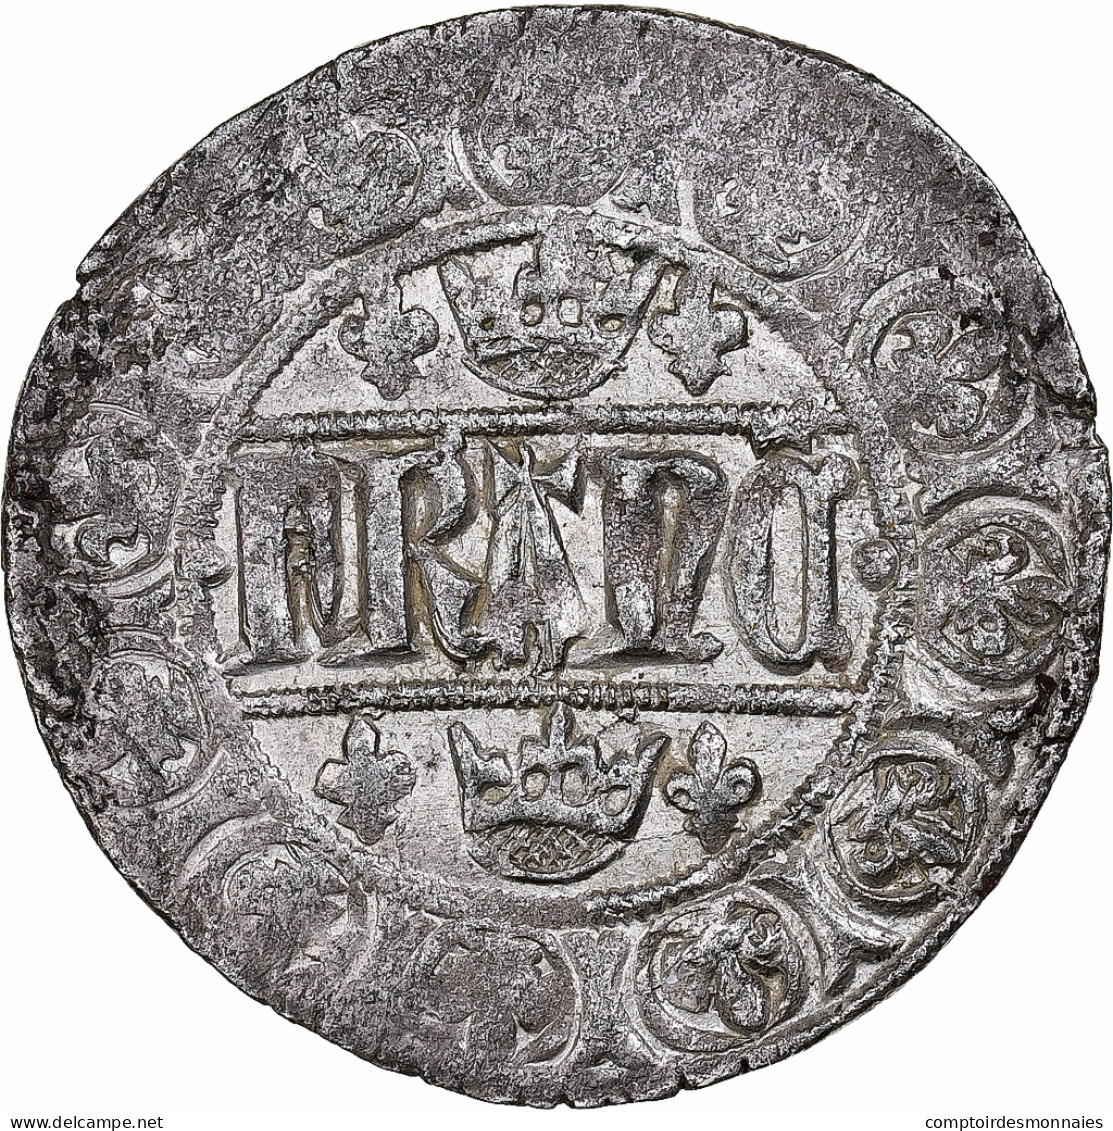 France, Jean II Le Bon, Blanc Aux Quadrilobes, 1354-1364, Billon, TTB - 1350-1364 Juan II El Bueno